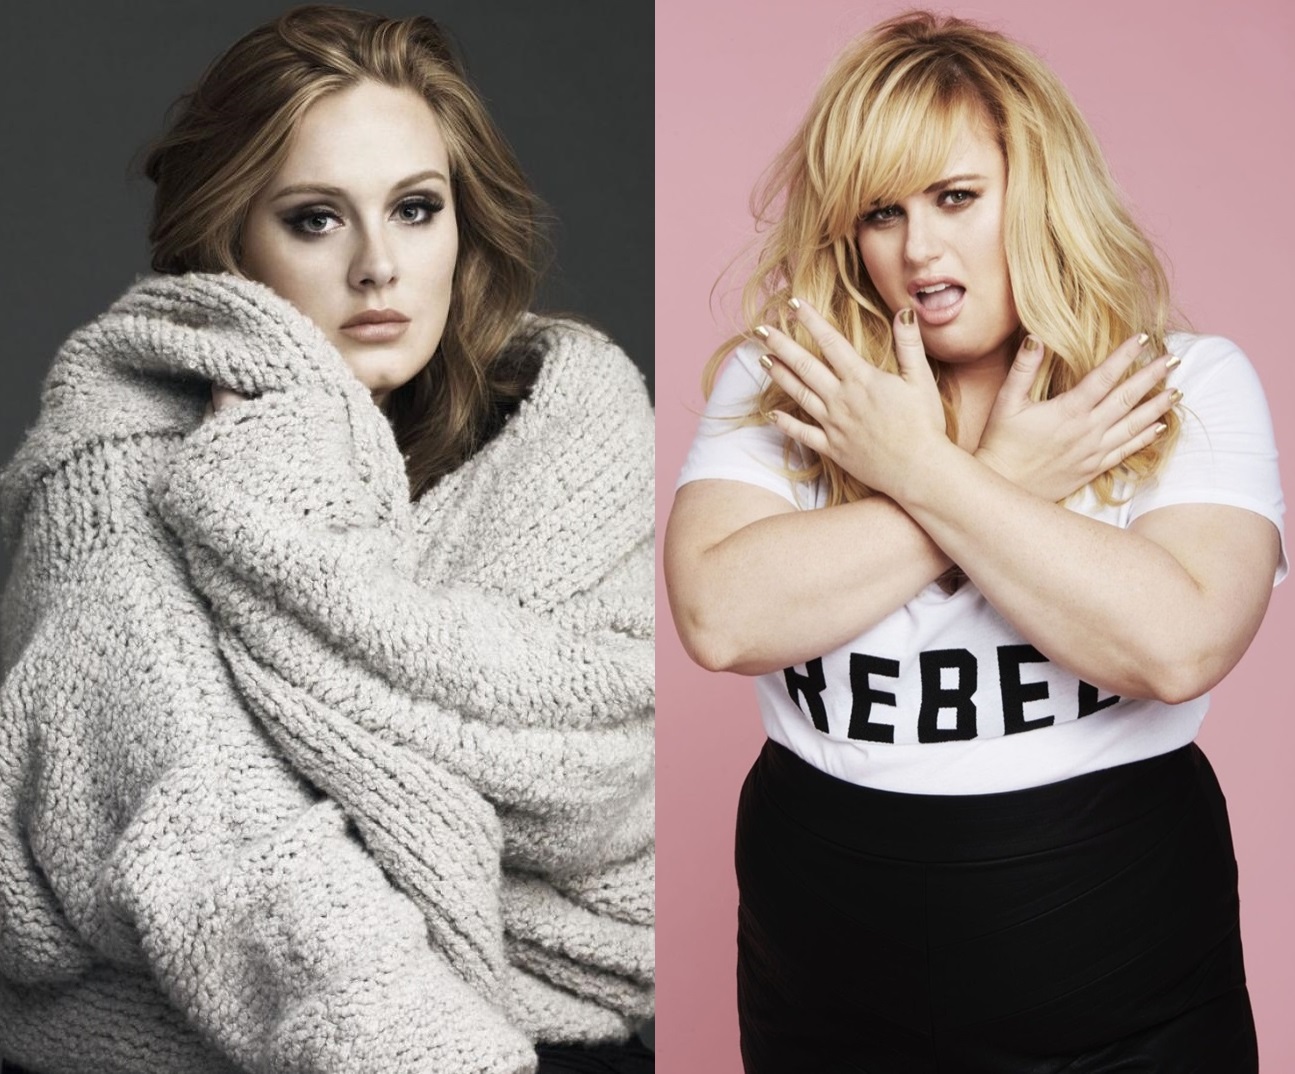 Adele nem szeretné, ha Rebel Wilson alakítaná őt a filmvásznon